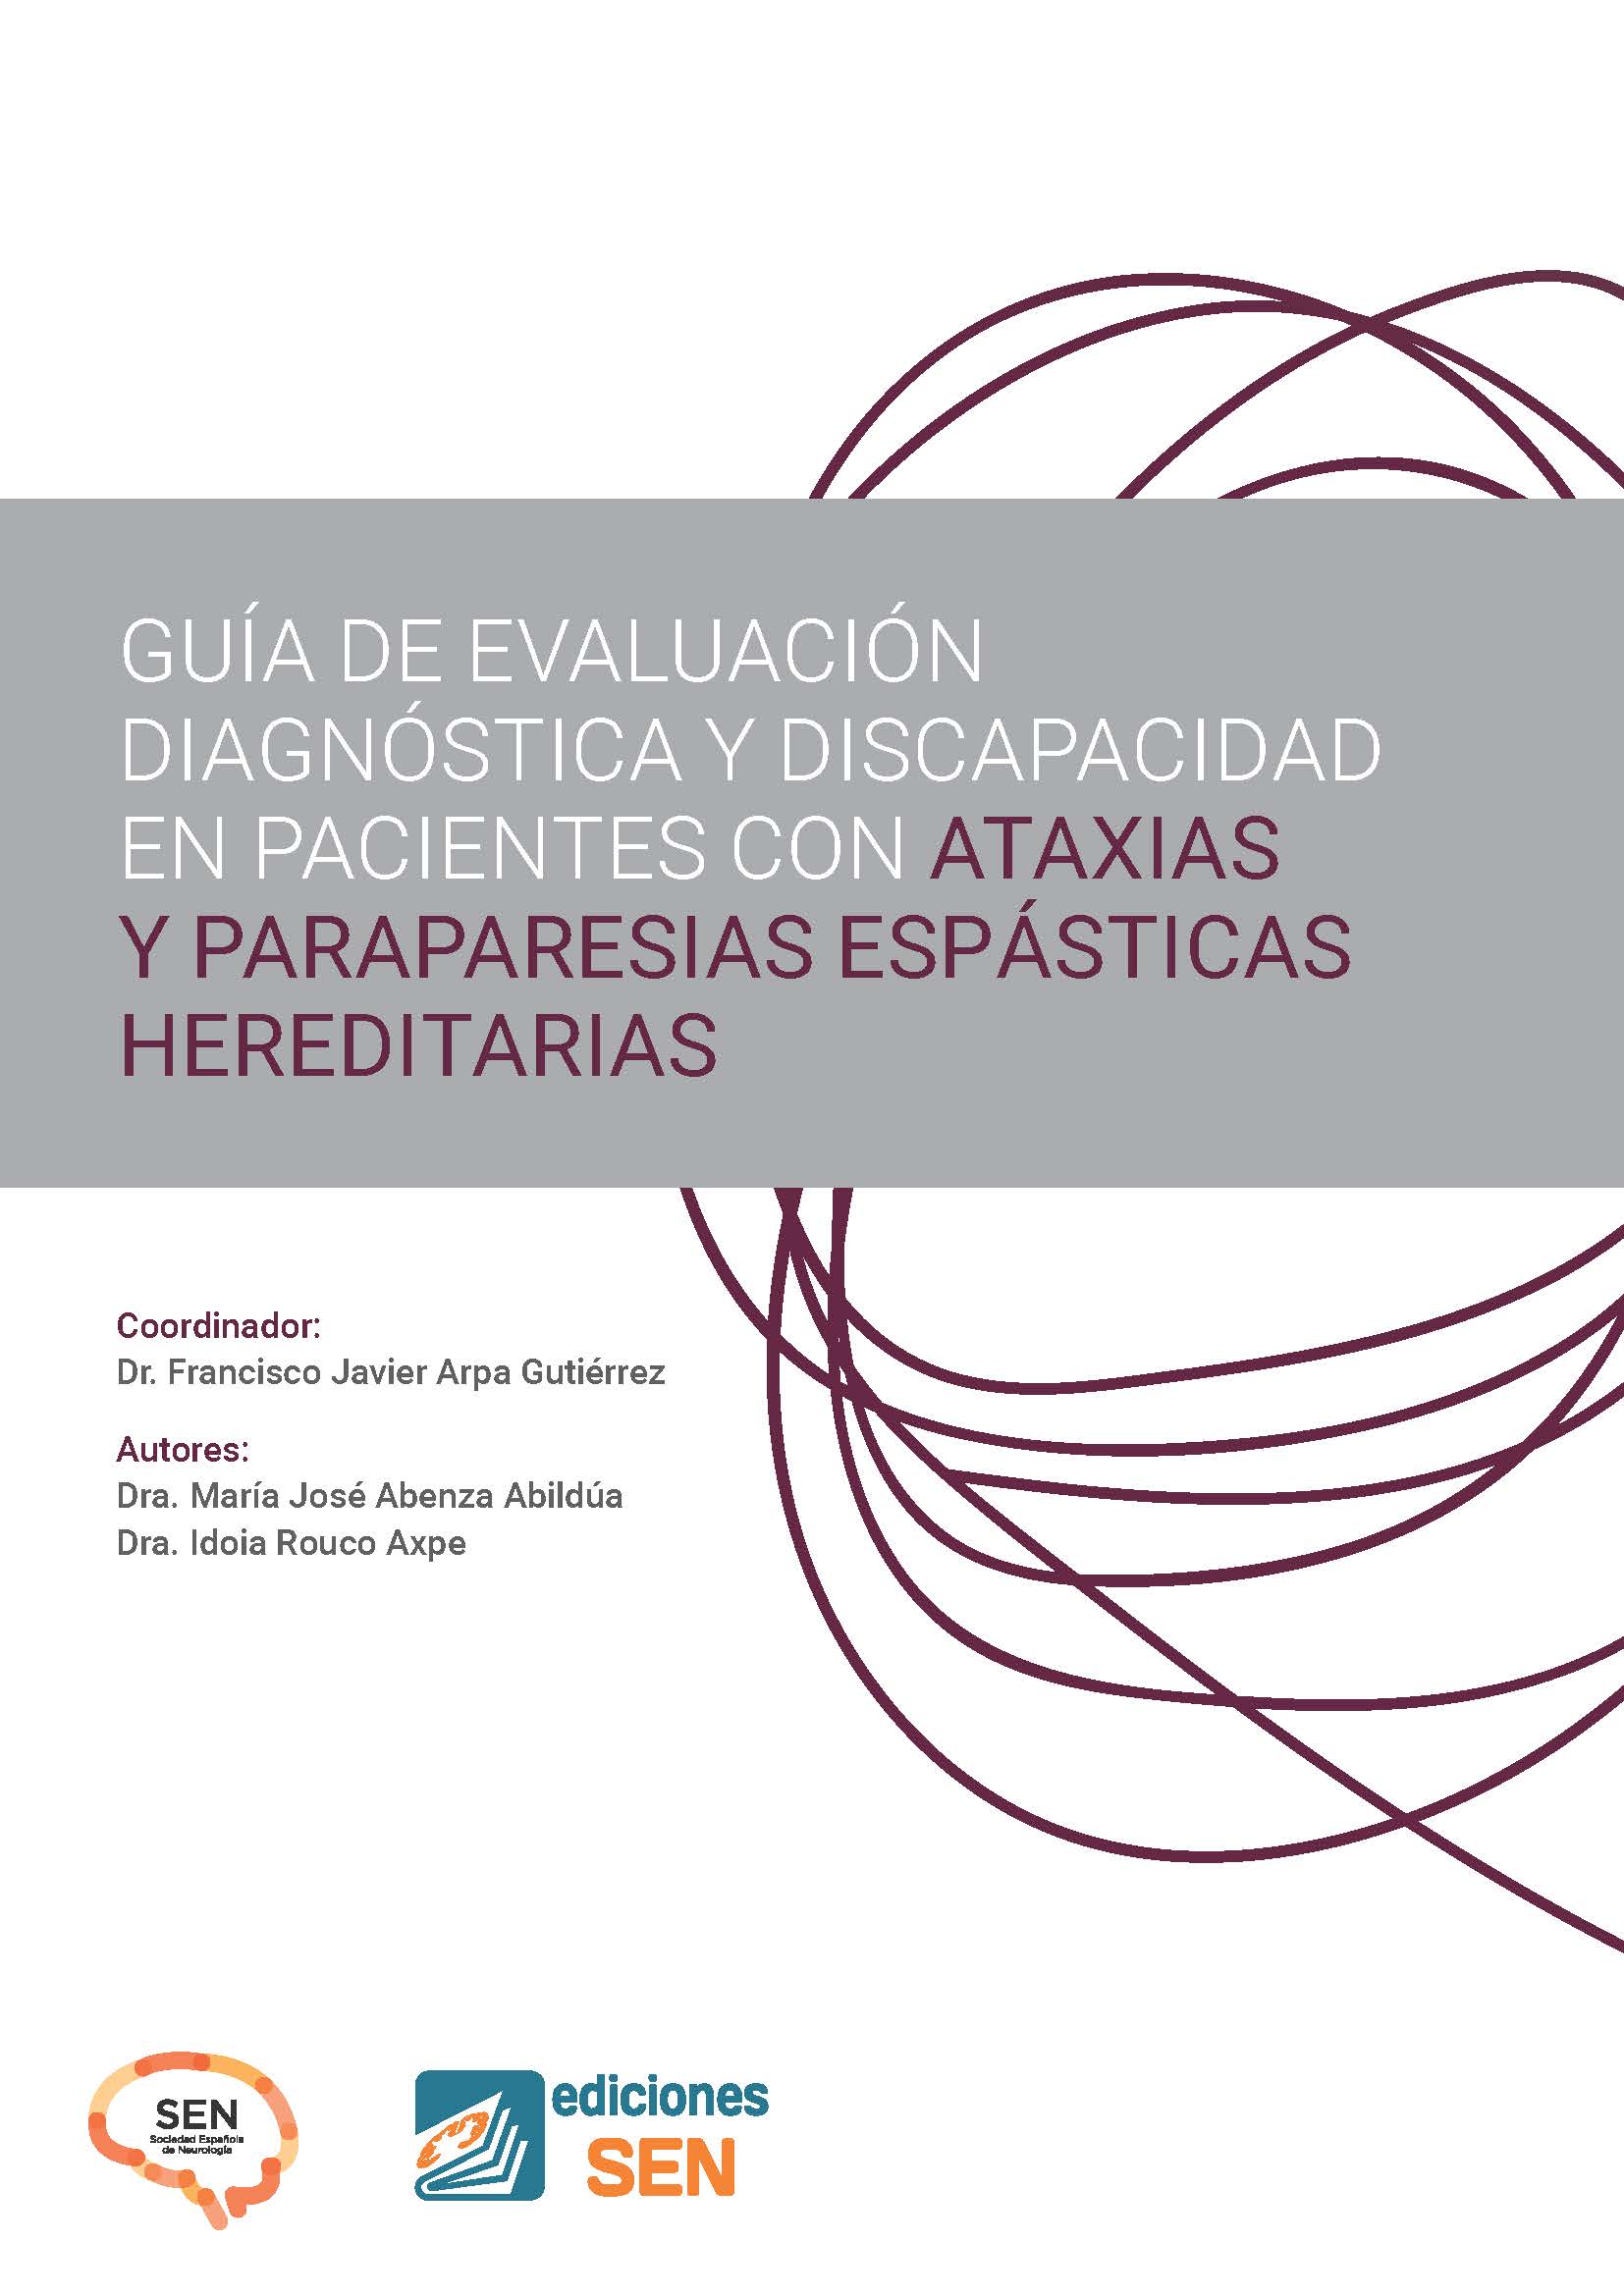 Guía de Evaluación Diagnóstica y Discapacidad en Pacientes con Ataxias y Paraparesias Espásticas Hereditarias